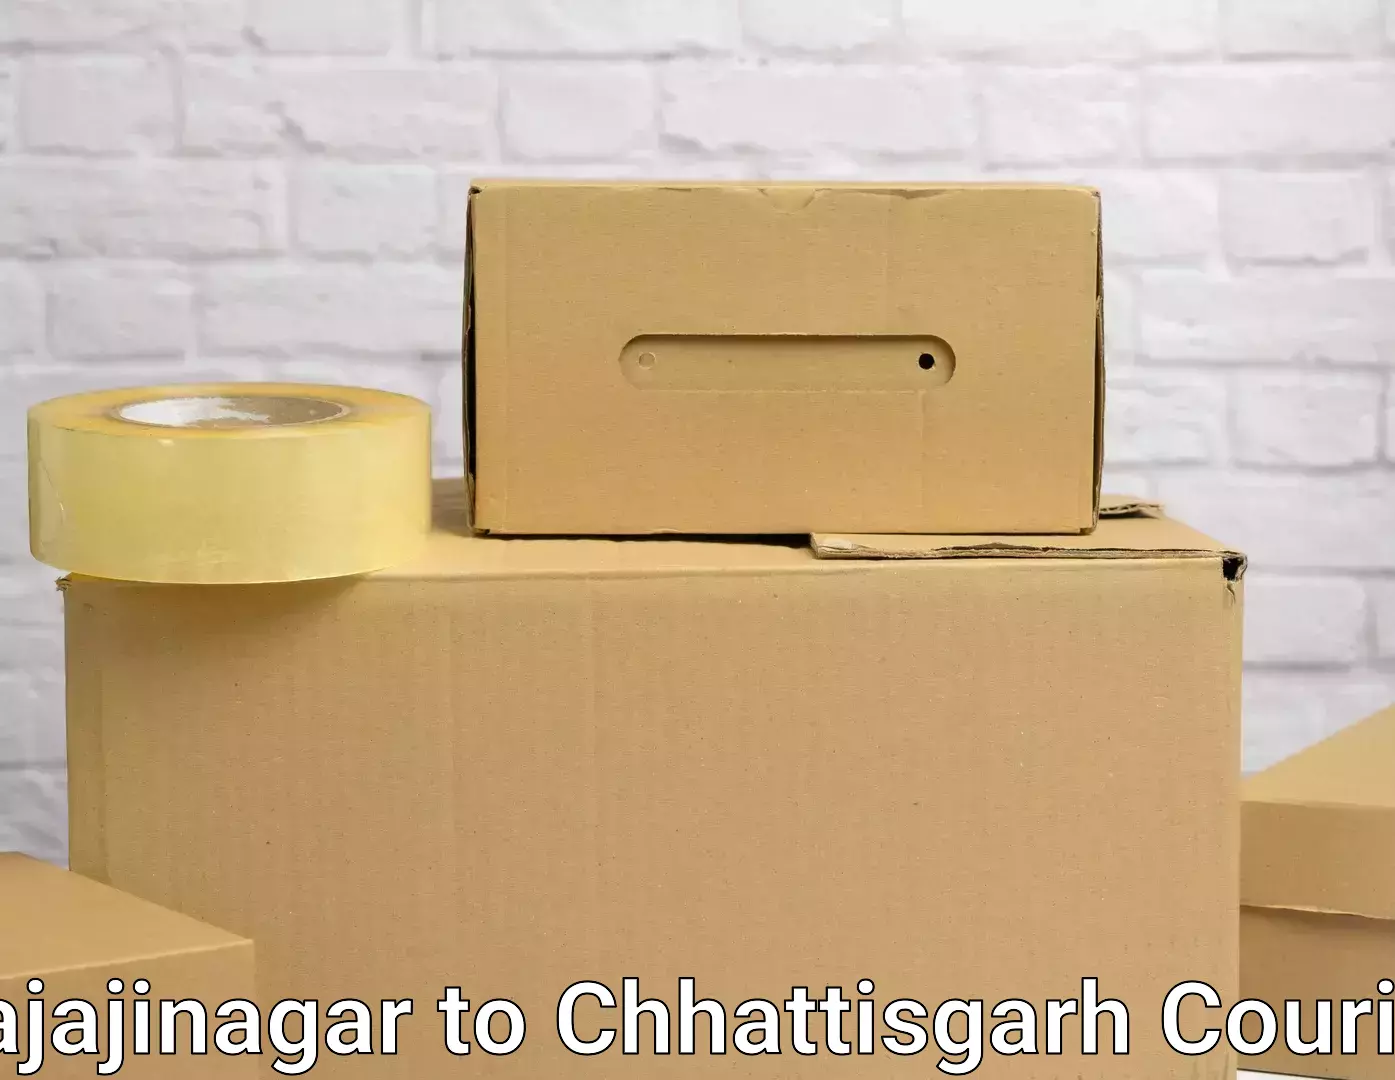 Furniture transport specialists Rajajinagar to Raigarh